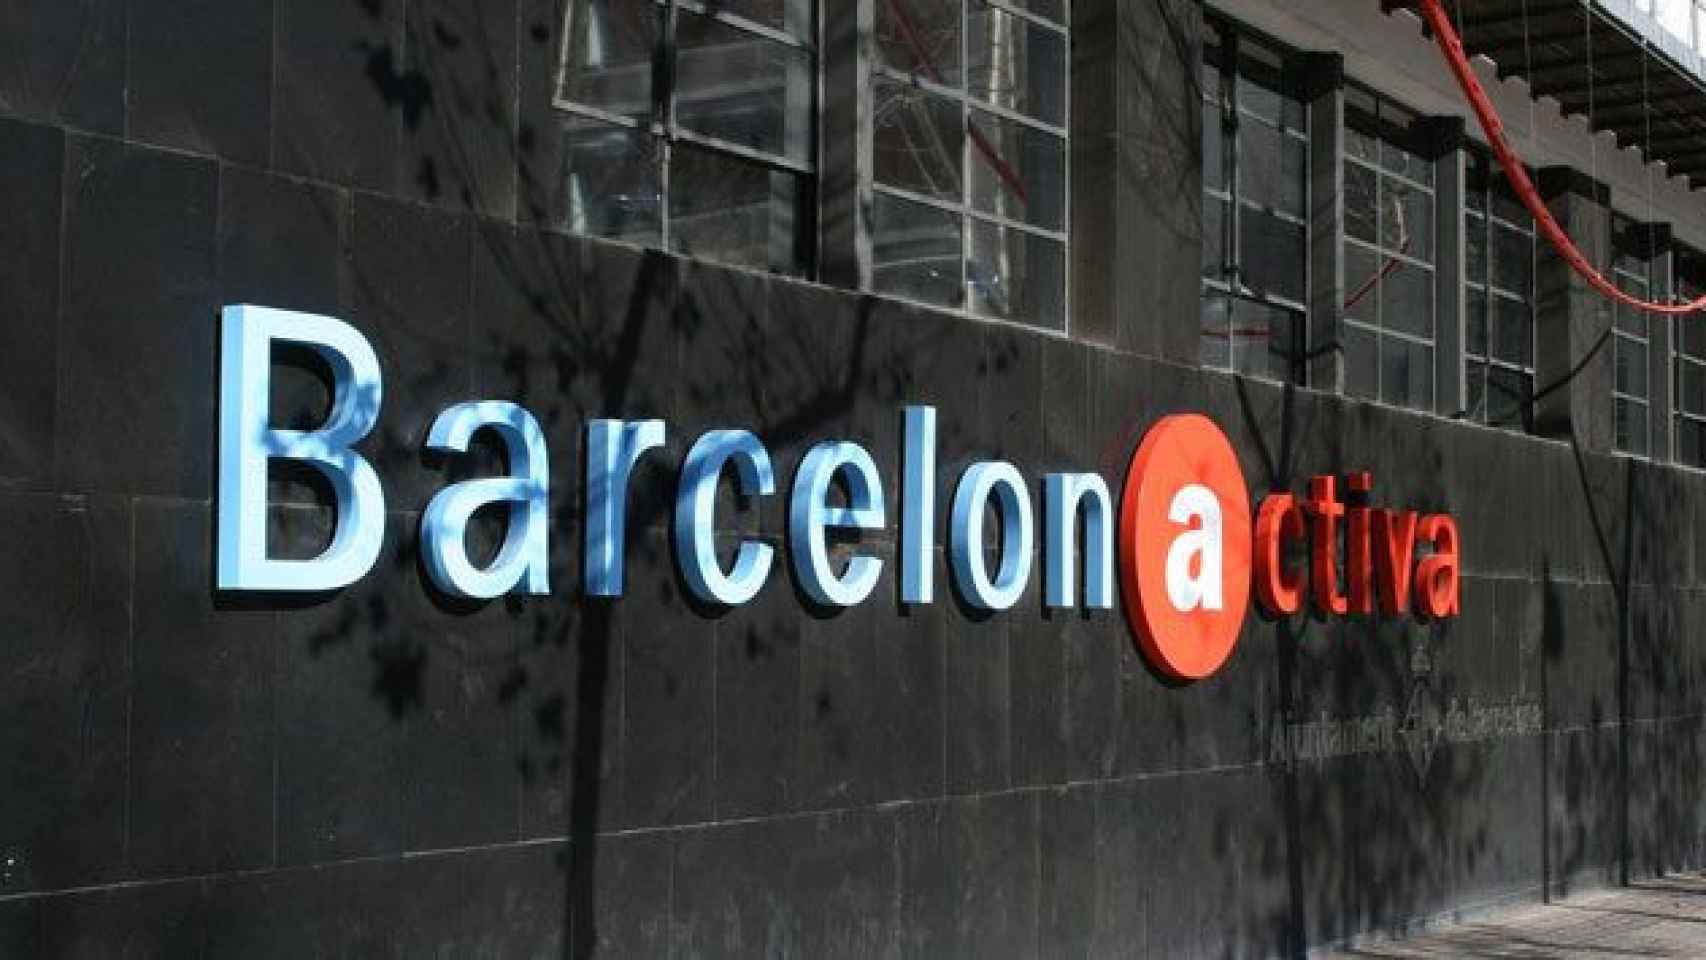 Fachada de Barcelona Activa, sede de las jornadas celebradas por los comunes / CG